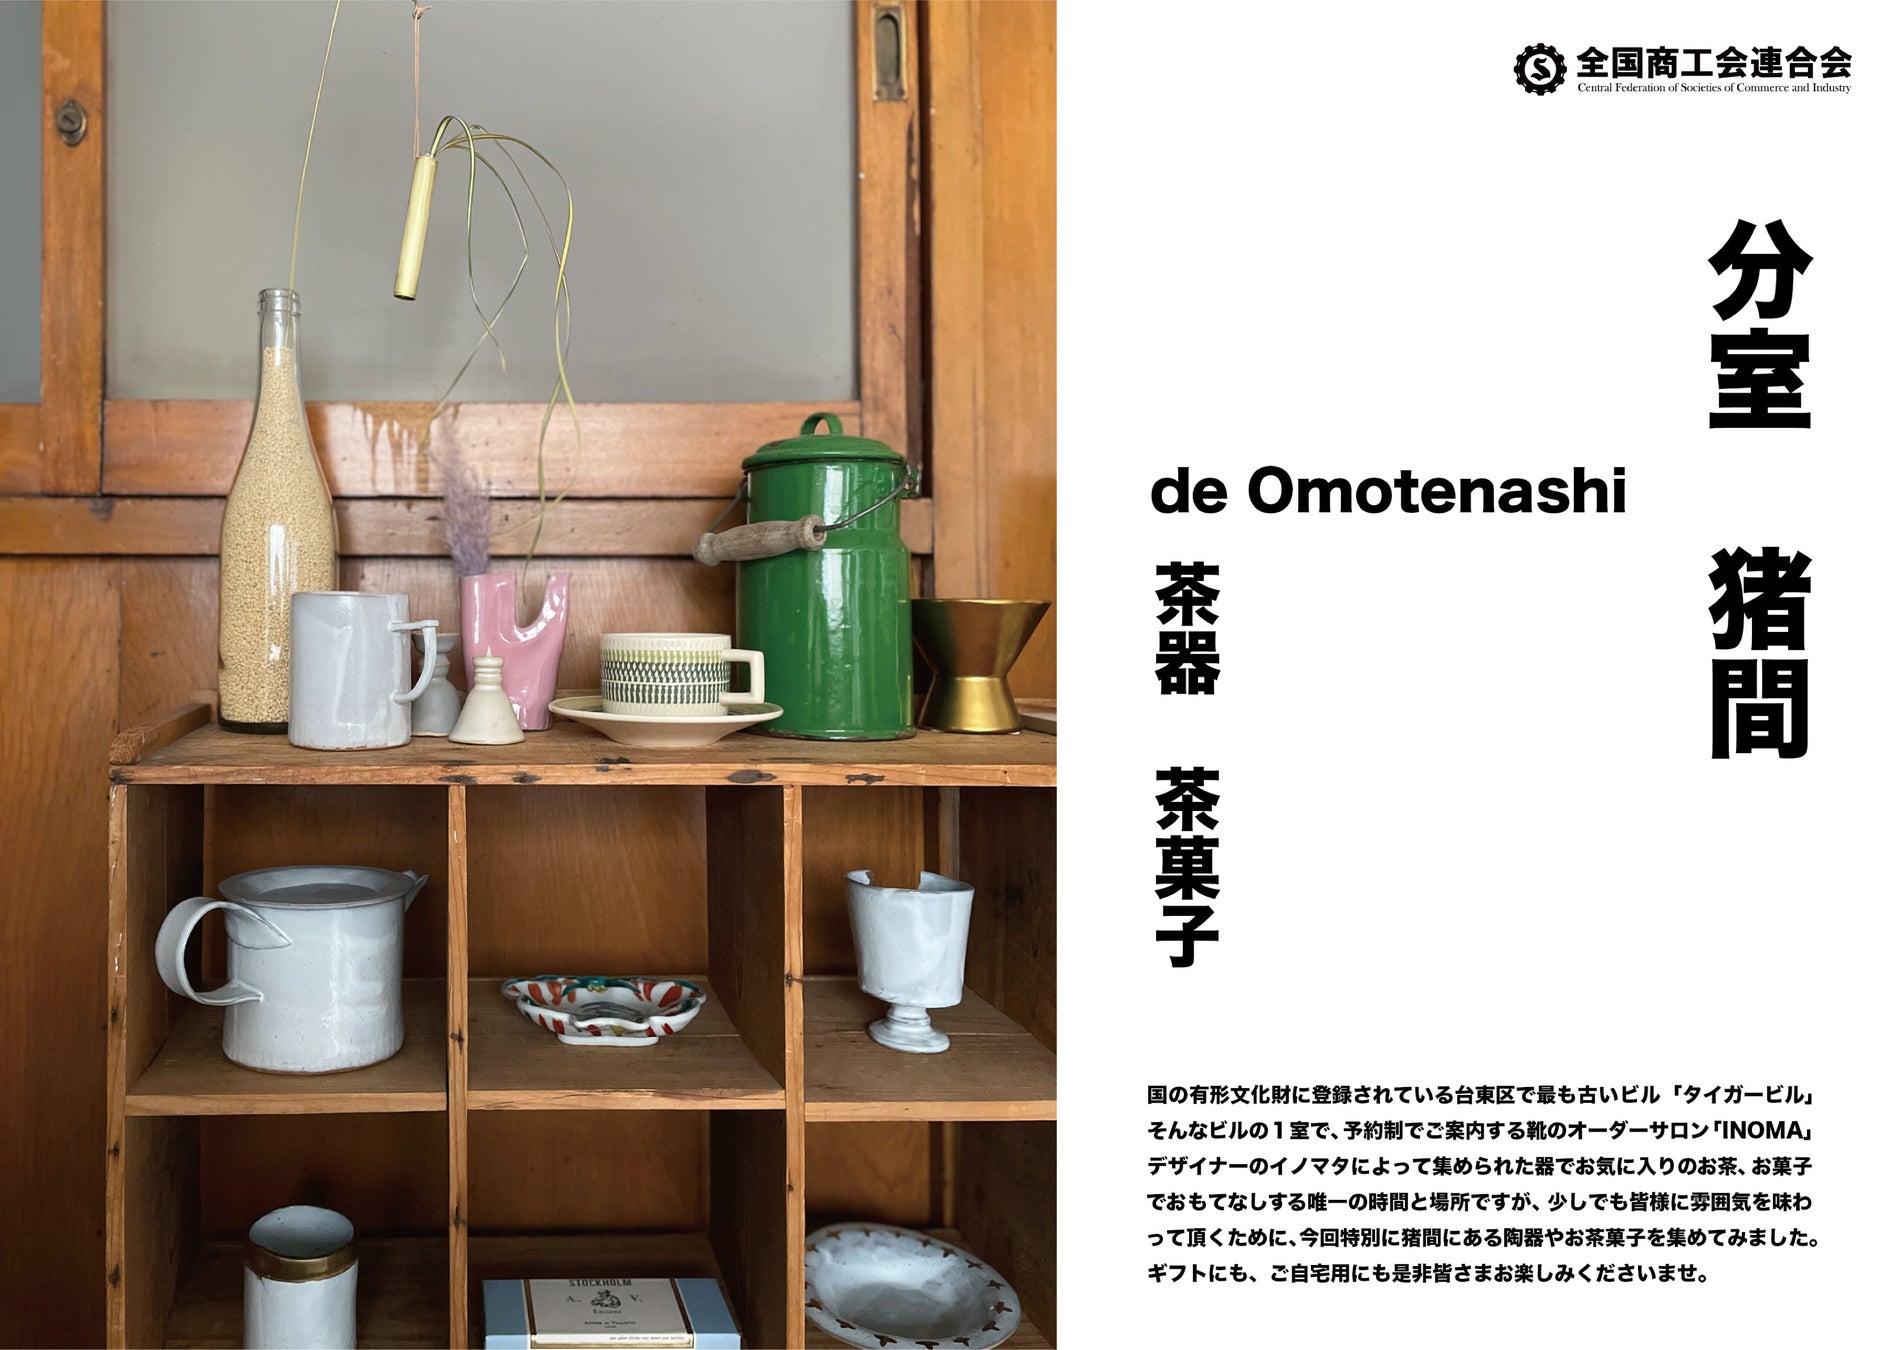 【分室猪間 de Omotenashi】伊勢丹立川店1階で期間限定開催中。